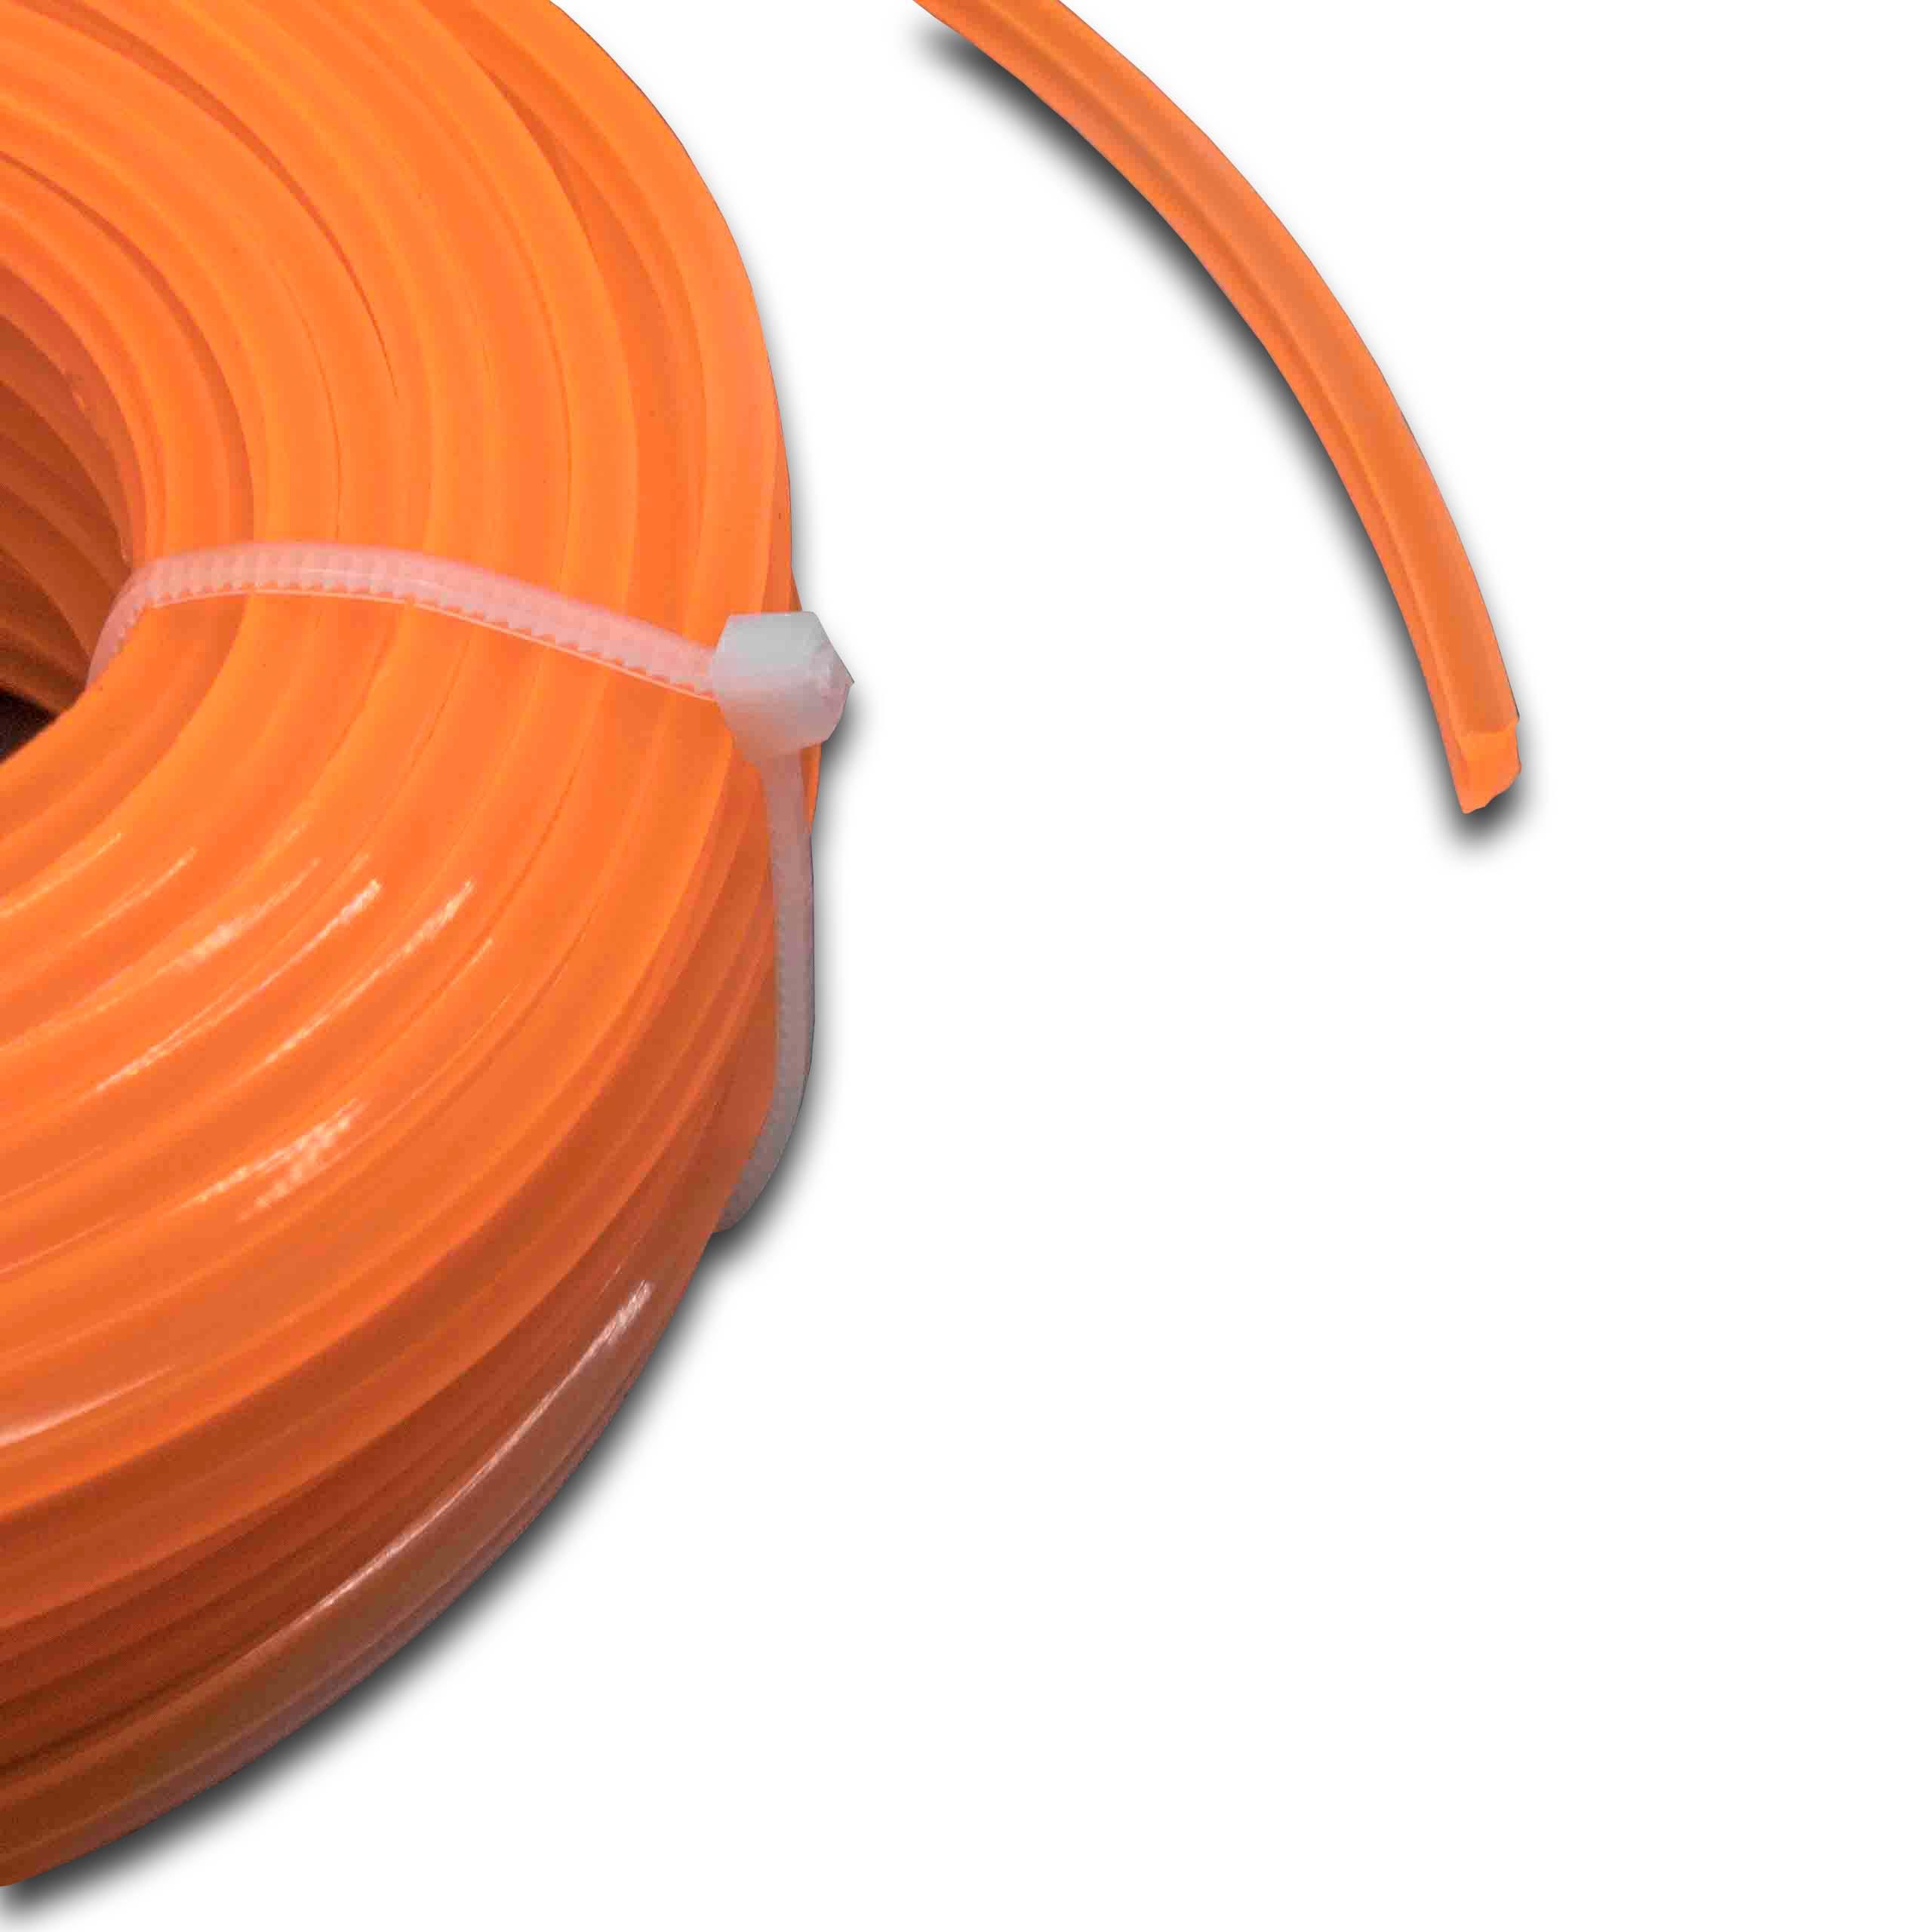 Fil pour débroussailleuse, tondeuse Bosch, Makita - Fil de coupe, orange, 2,4 mm x 15 m, carré